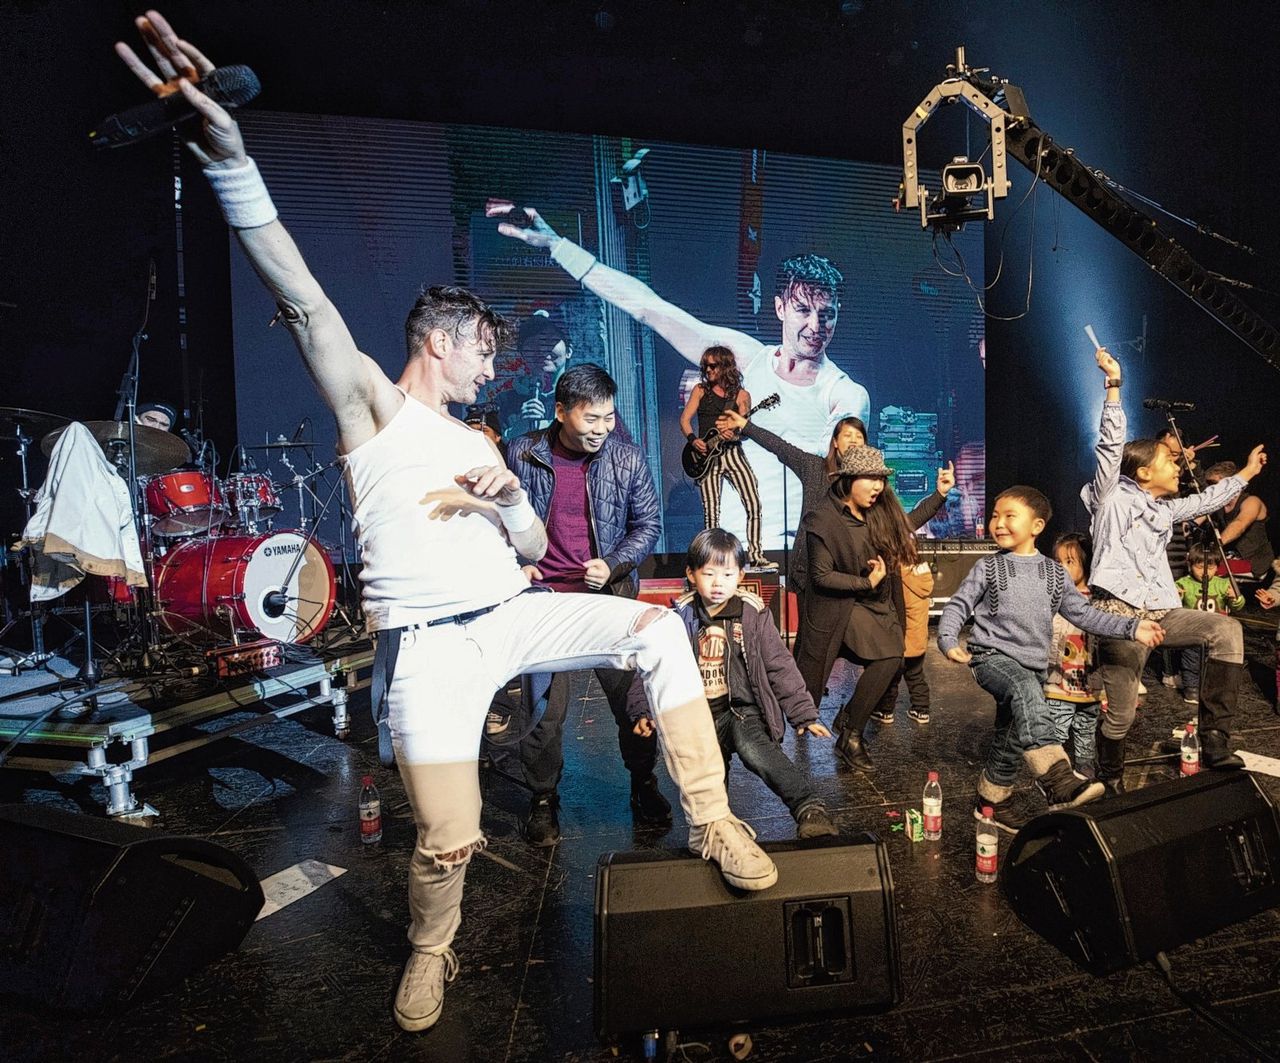 De band Hippe Gasten, met zanger Jon van den Elsen in het wit, tijdens een optreden in de Chinese stad Hangzhou.